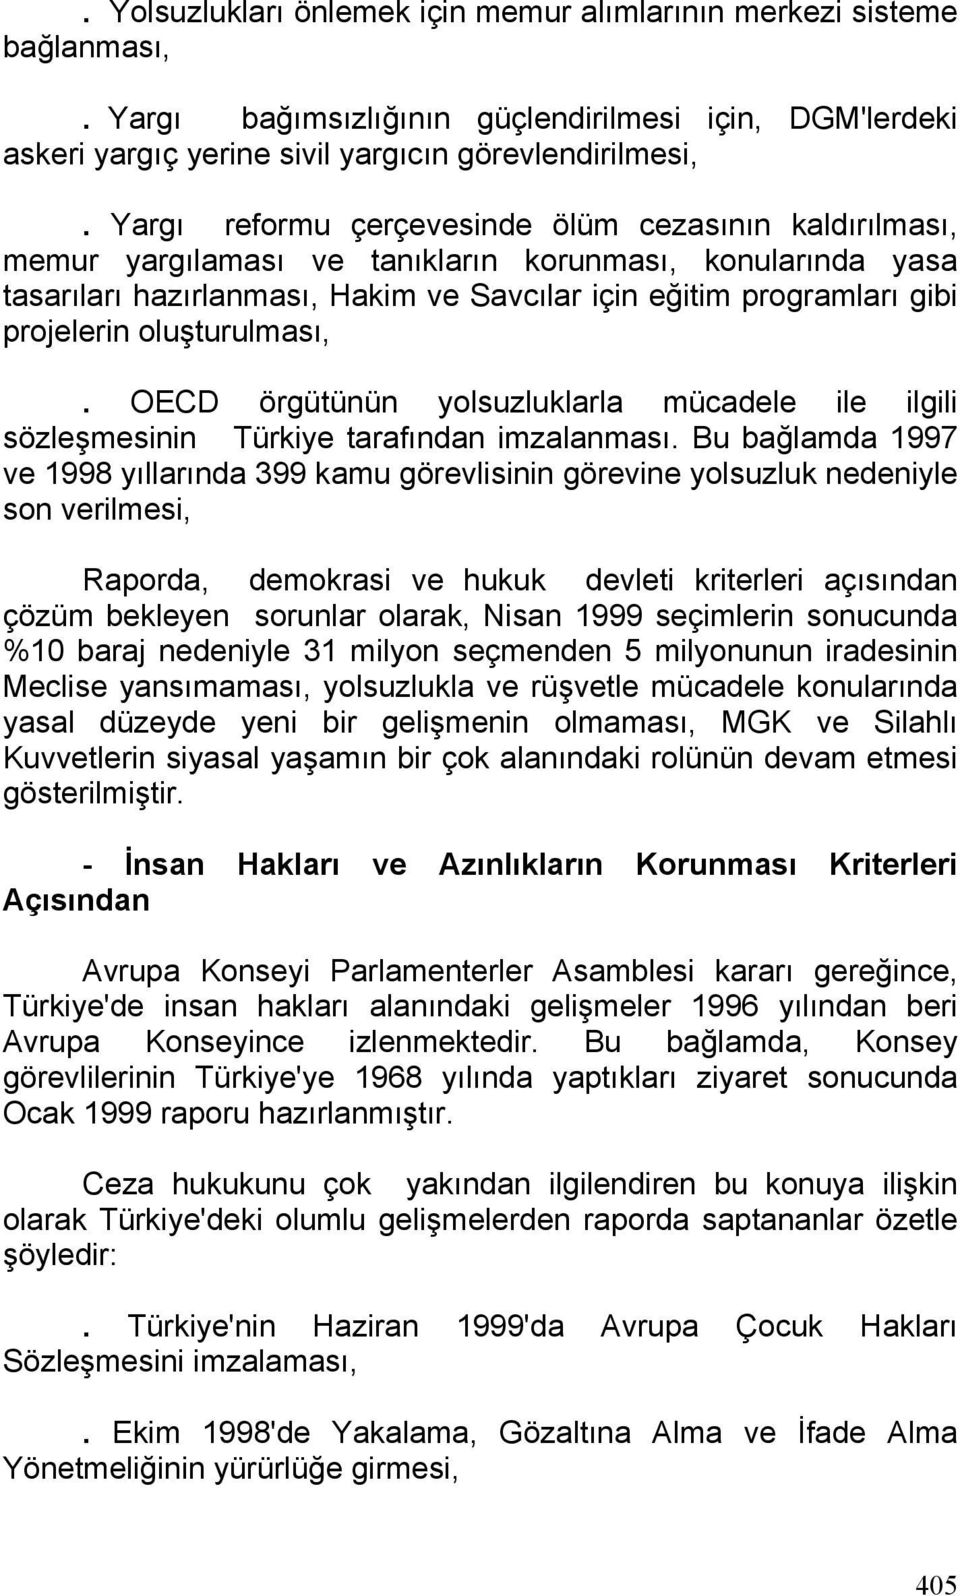 oluşturulması,. OECD örgütünün yolsuzluklarla mücadele ile ilgili sözleşmesinin Türkiye tarafından imzalanması.